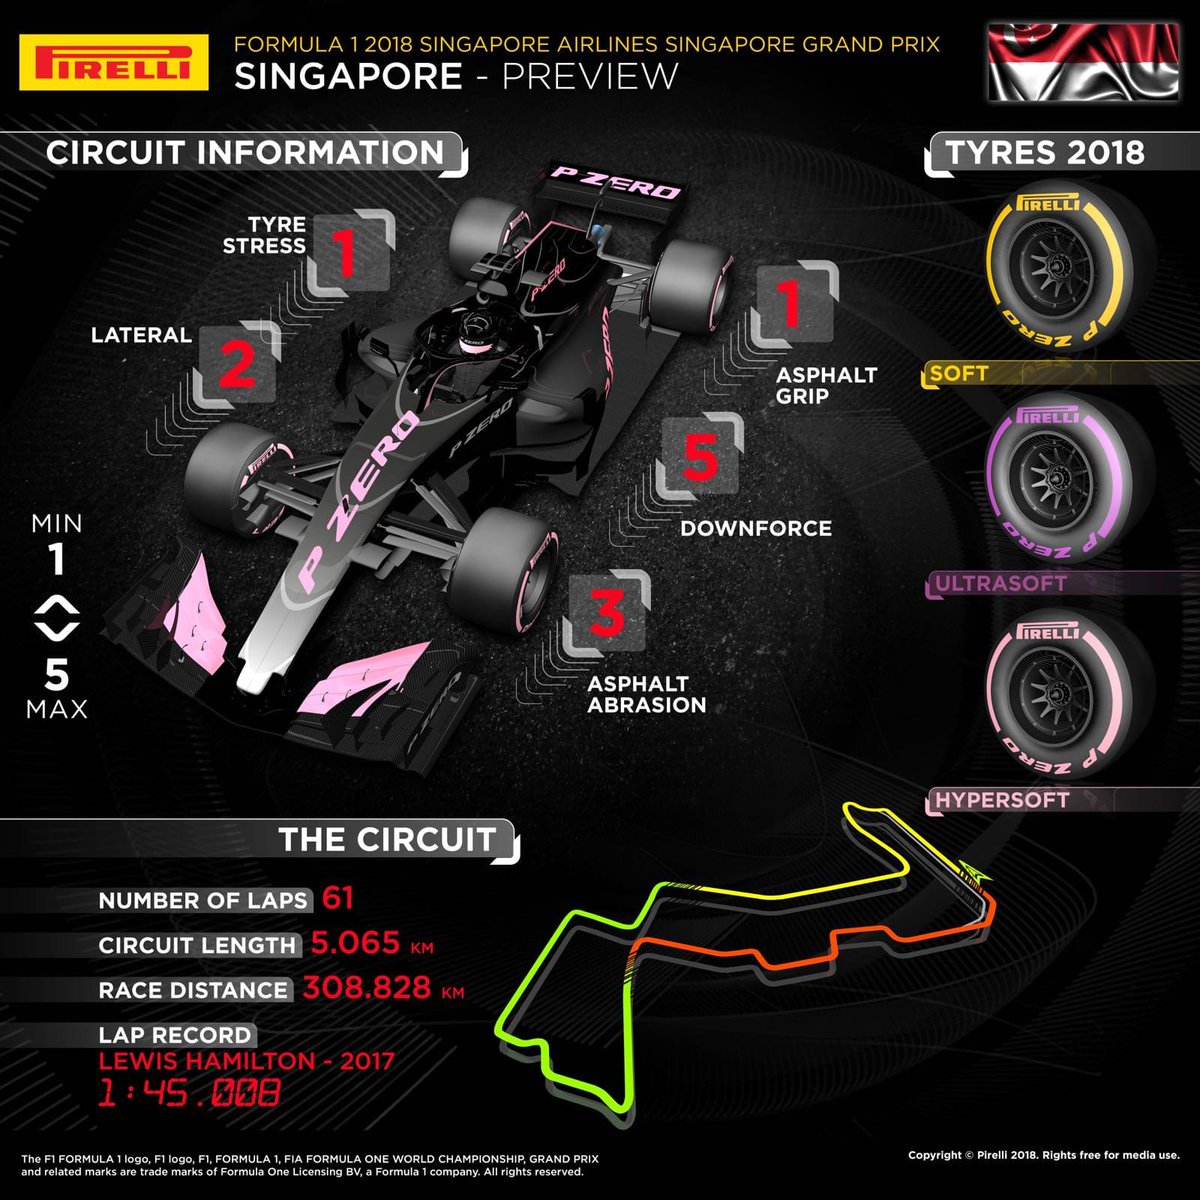 Pirelli lleva su compuesto Hypersoft a la noche de Singapur